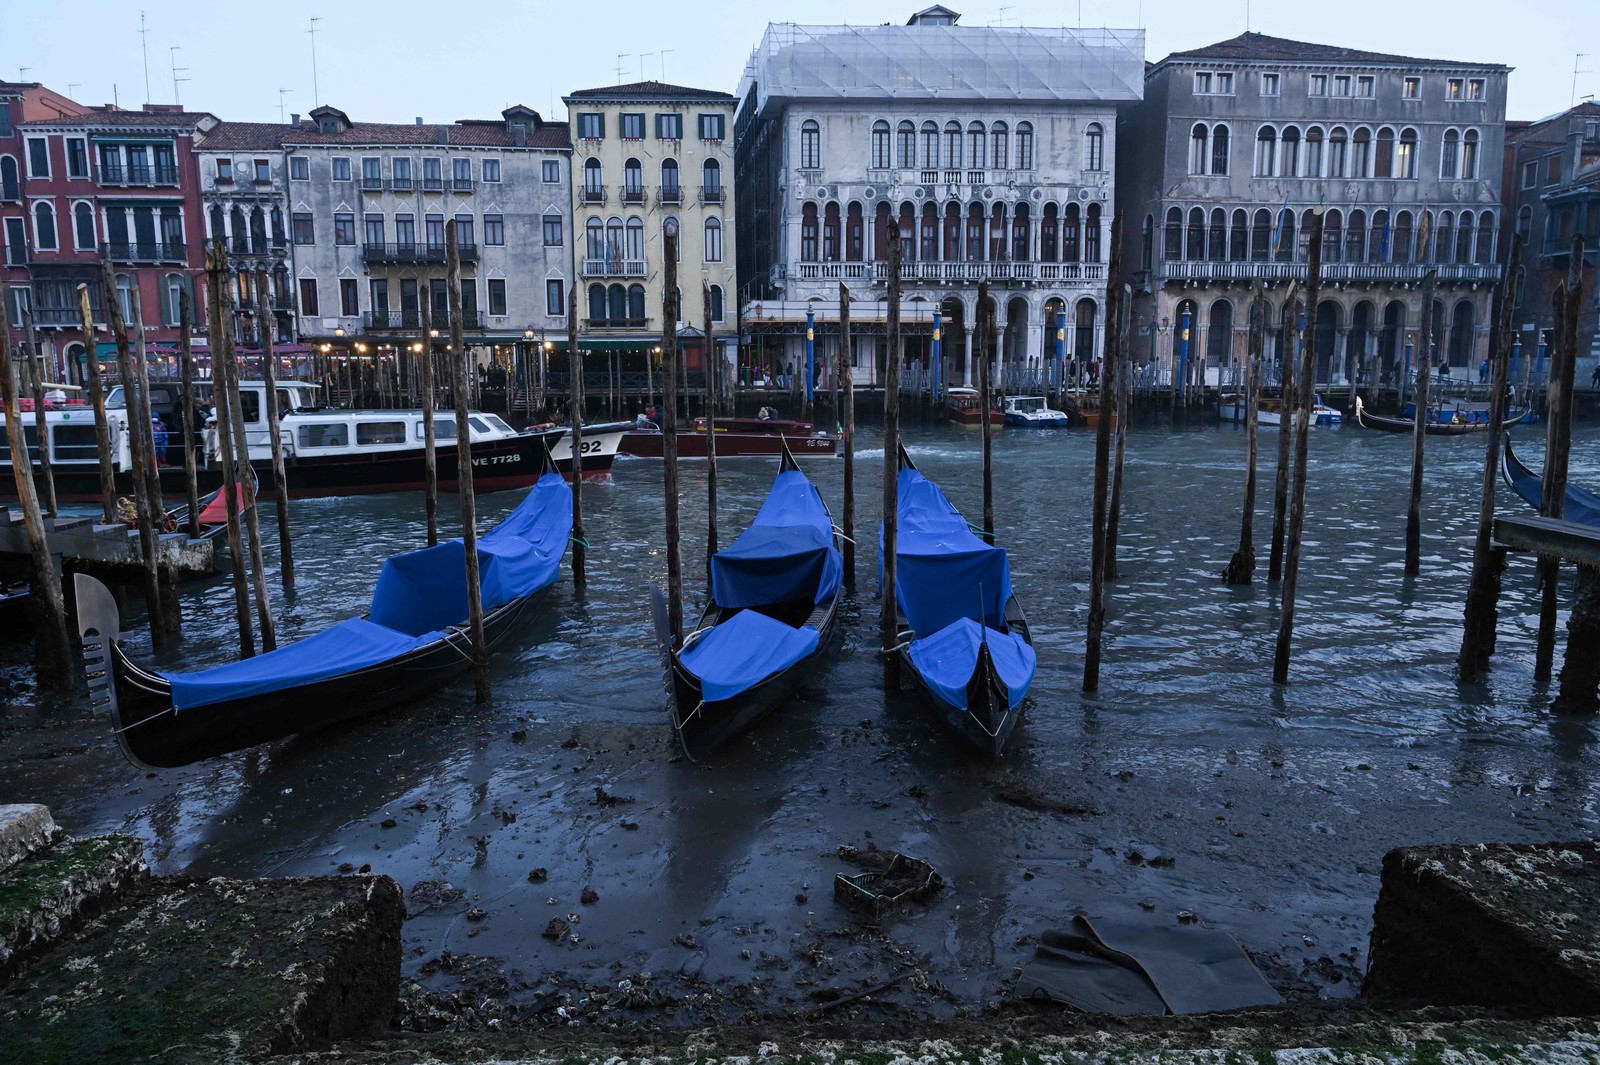 Tradicionais gôndolas de Veneza, na Itália, ficam encalhadas por falta de chuva — Foto: Marco Sabadin / AFP